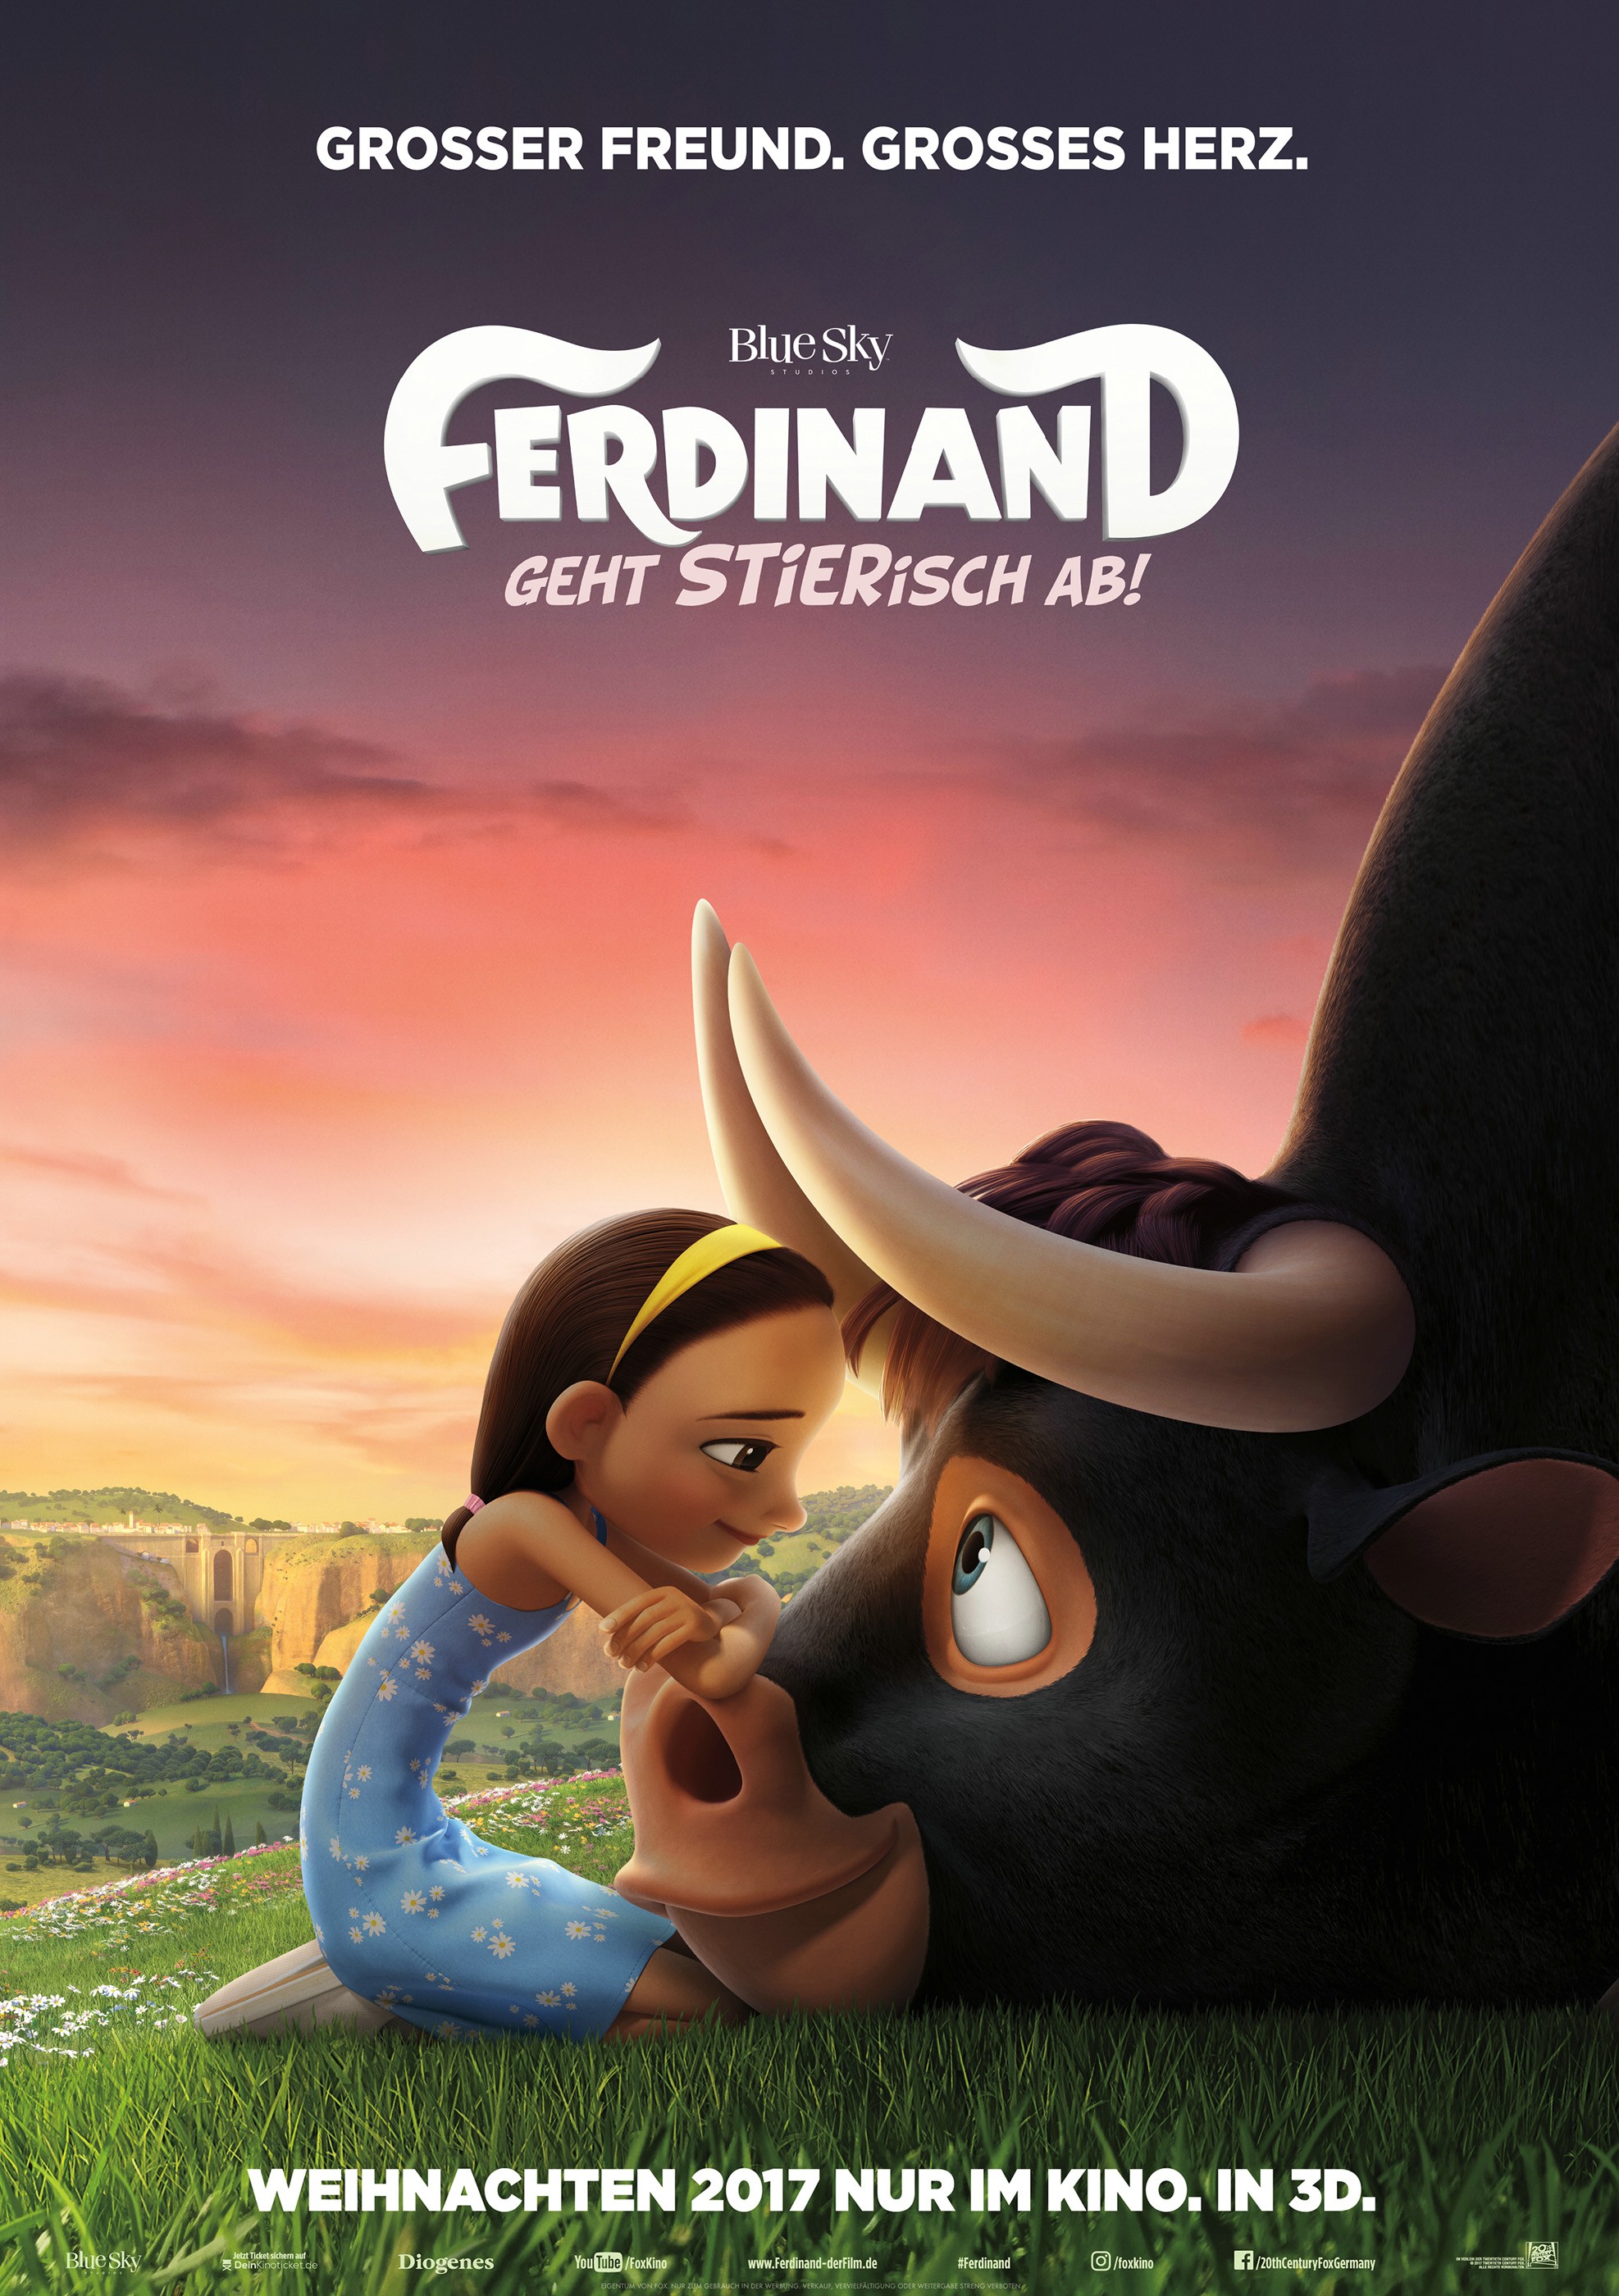 Ferdinand - Geht Stierisch ab! 3D